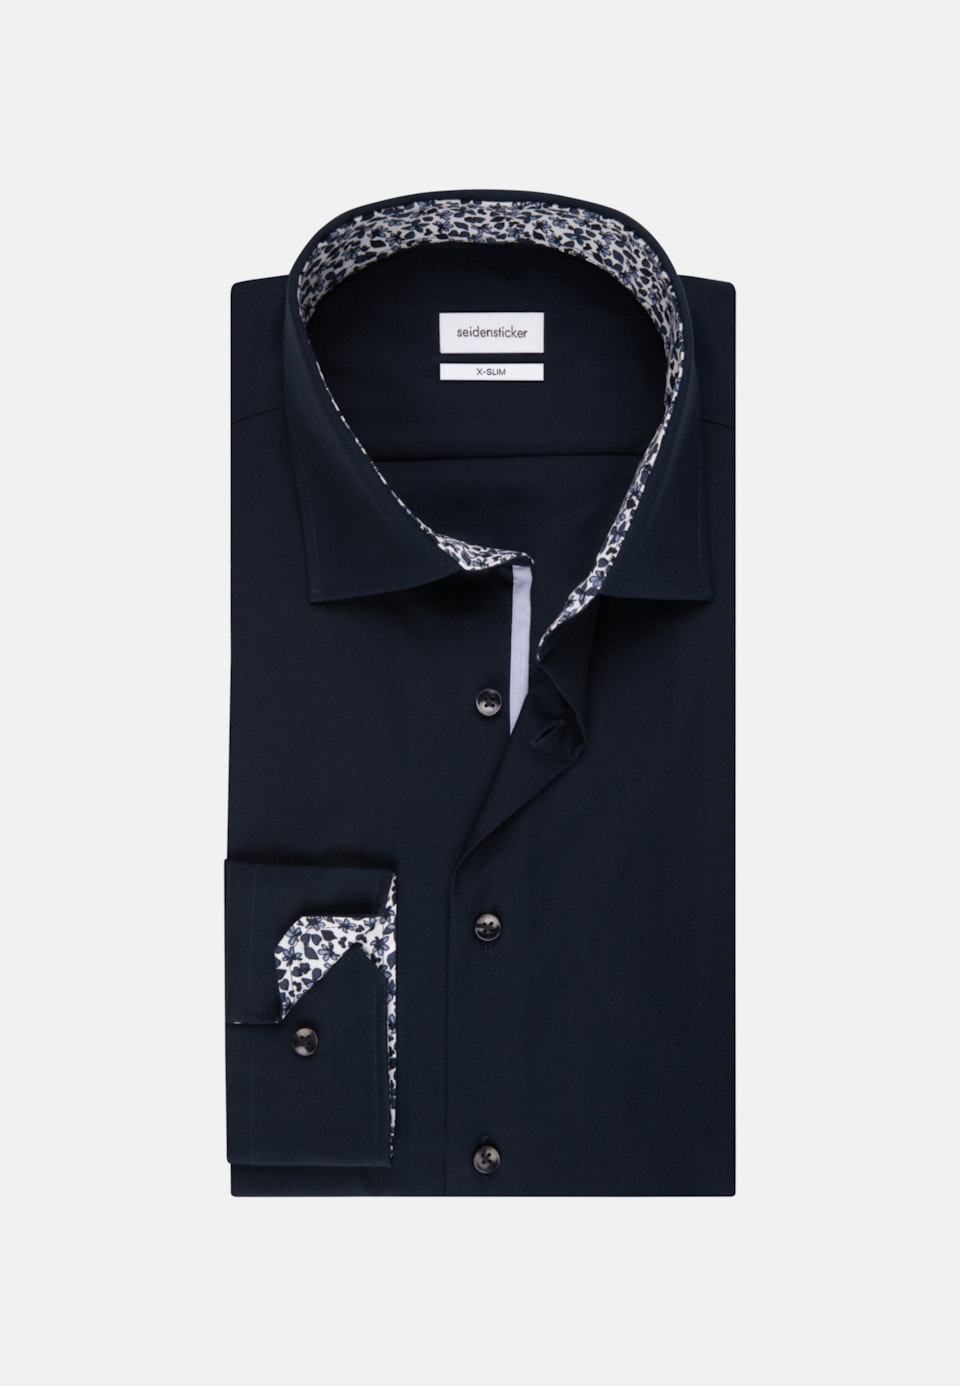 Bügelfreies Popeline Business Hemd in X-Slim mit Kentkragen und extra langem Arm in Dunkelblau |  Seidensticker Onlineshop